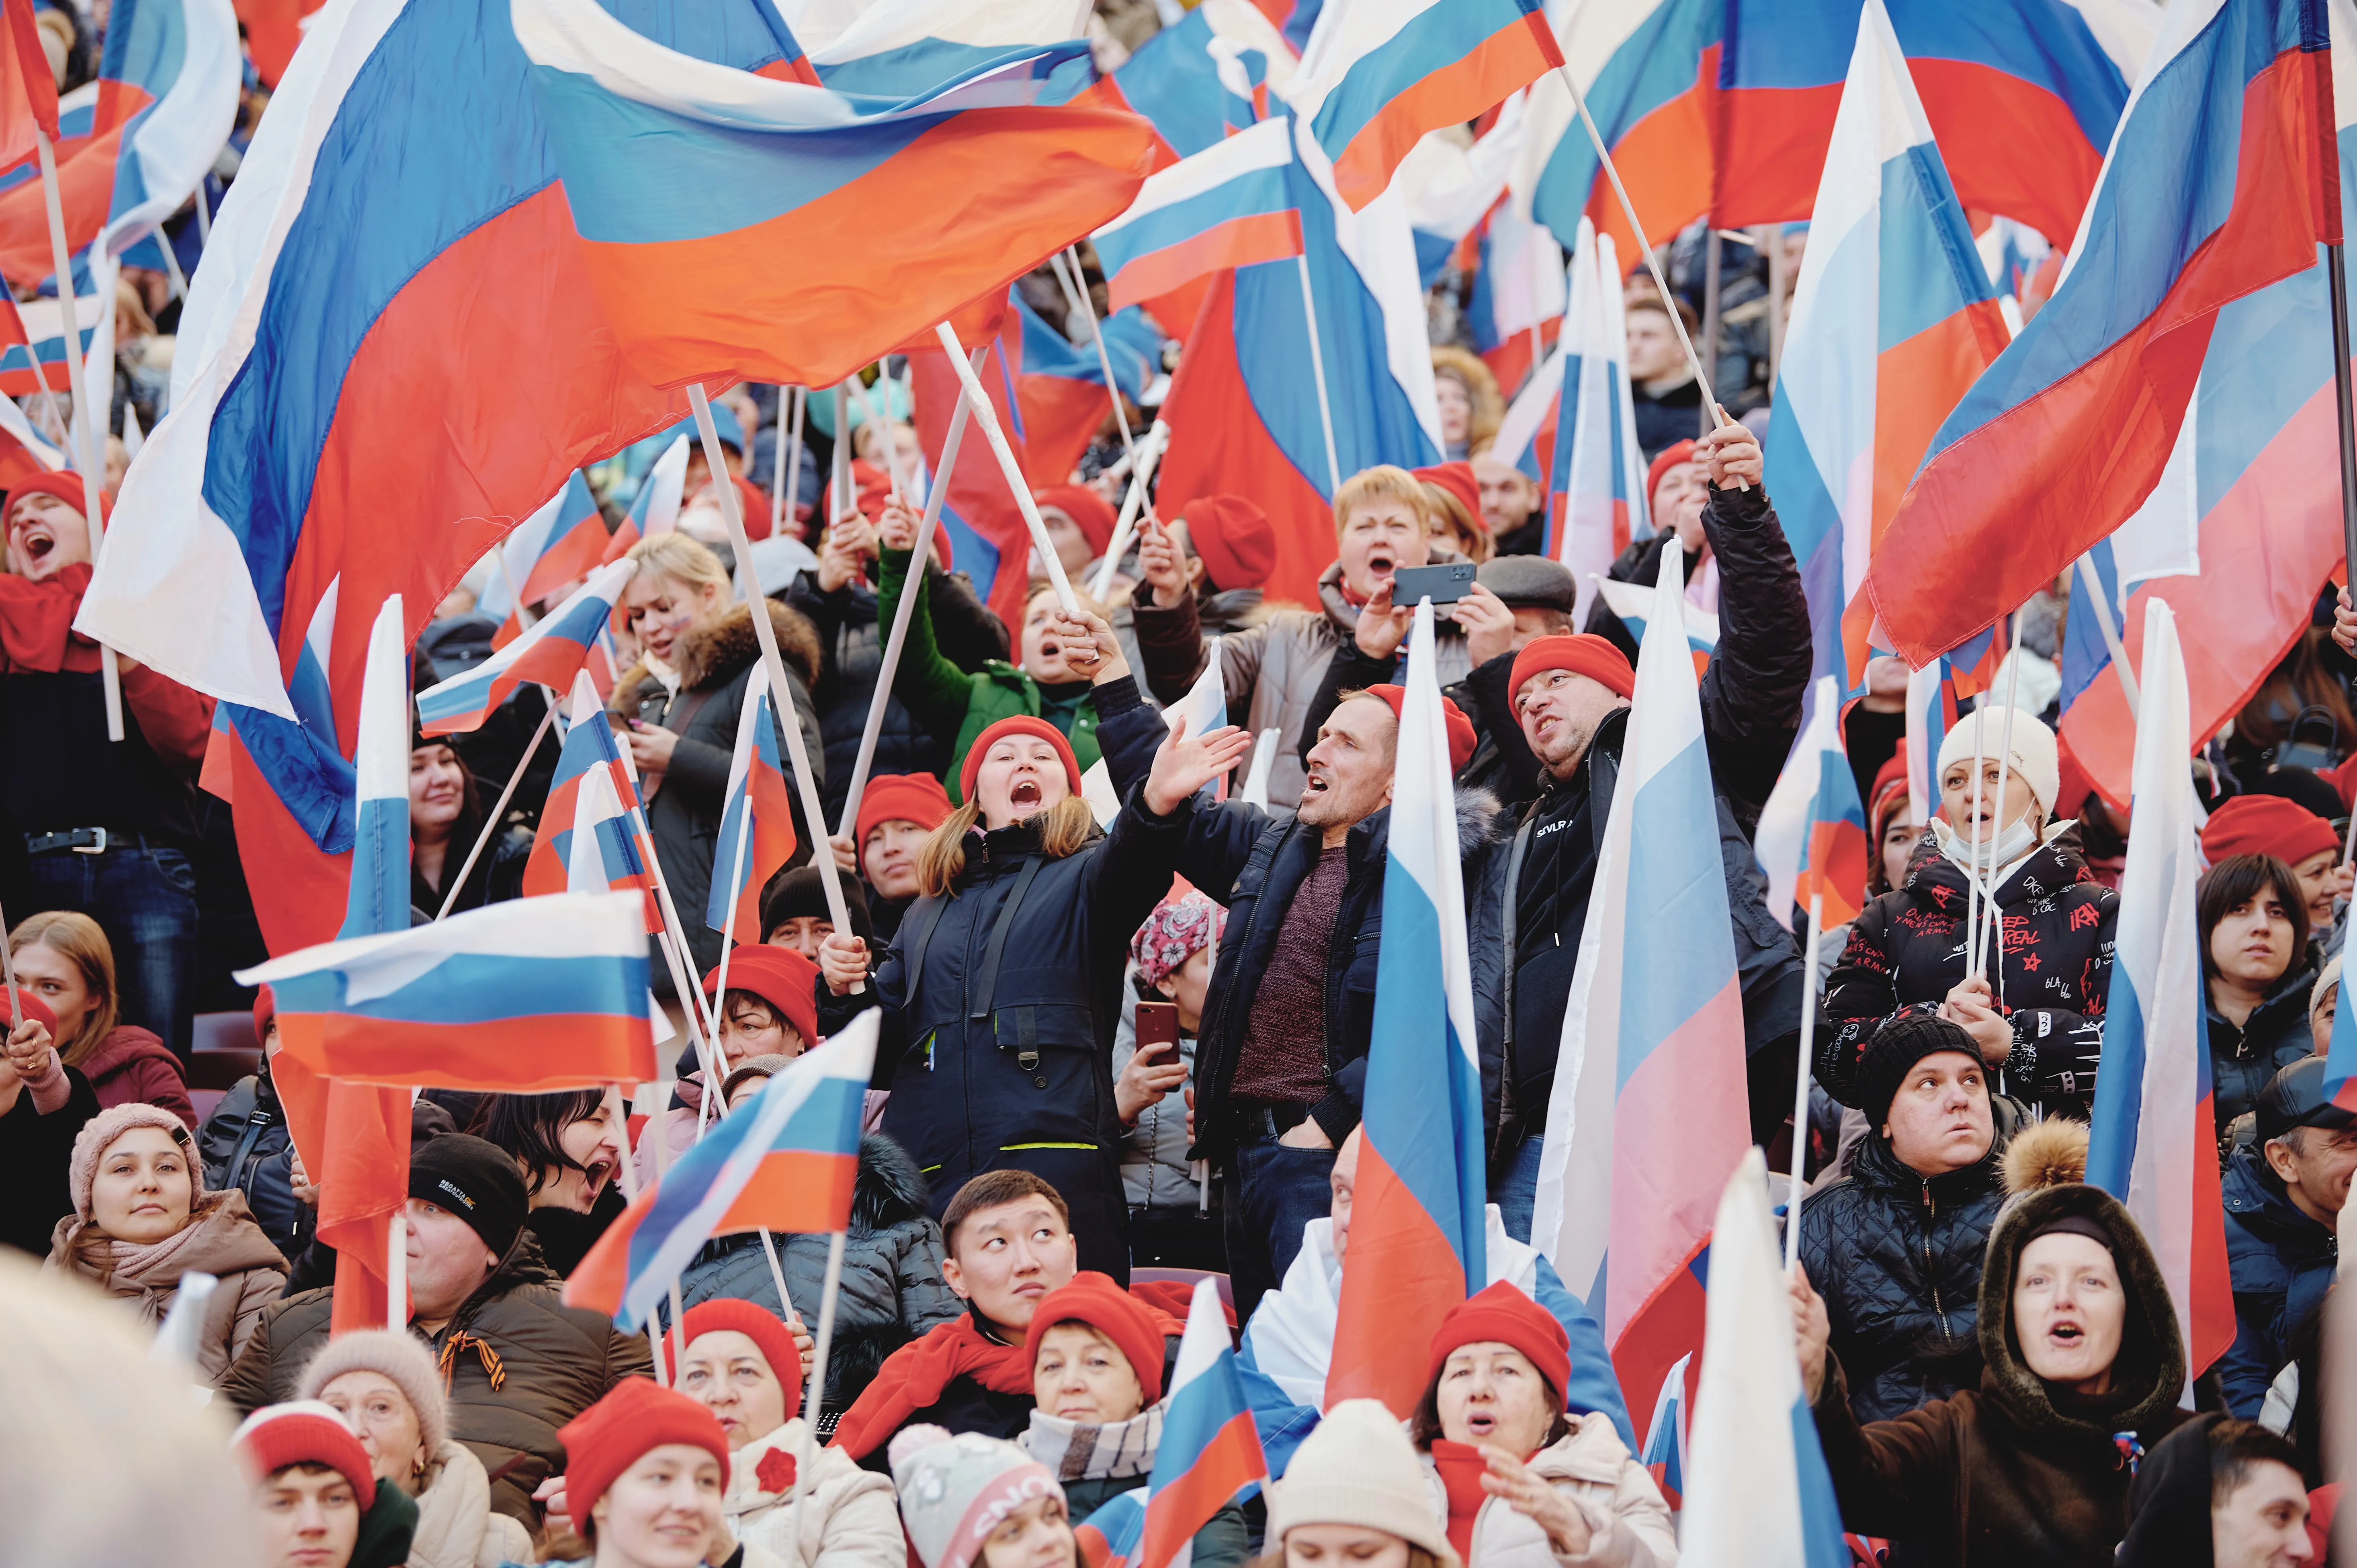 День воссоединения Крыма с Россией, Чистый понедельник, Конон-огородник: Праздники и приметы 18 марта